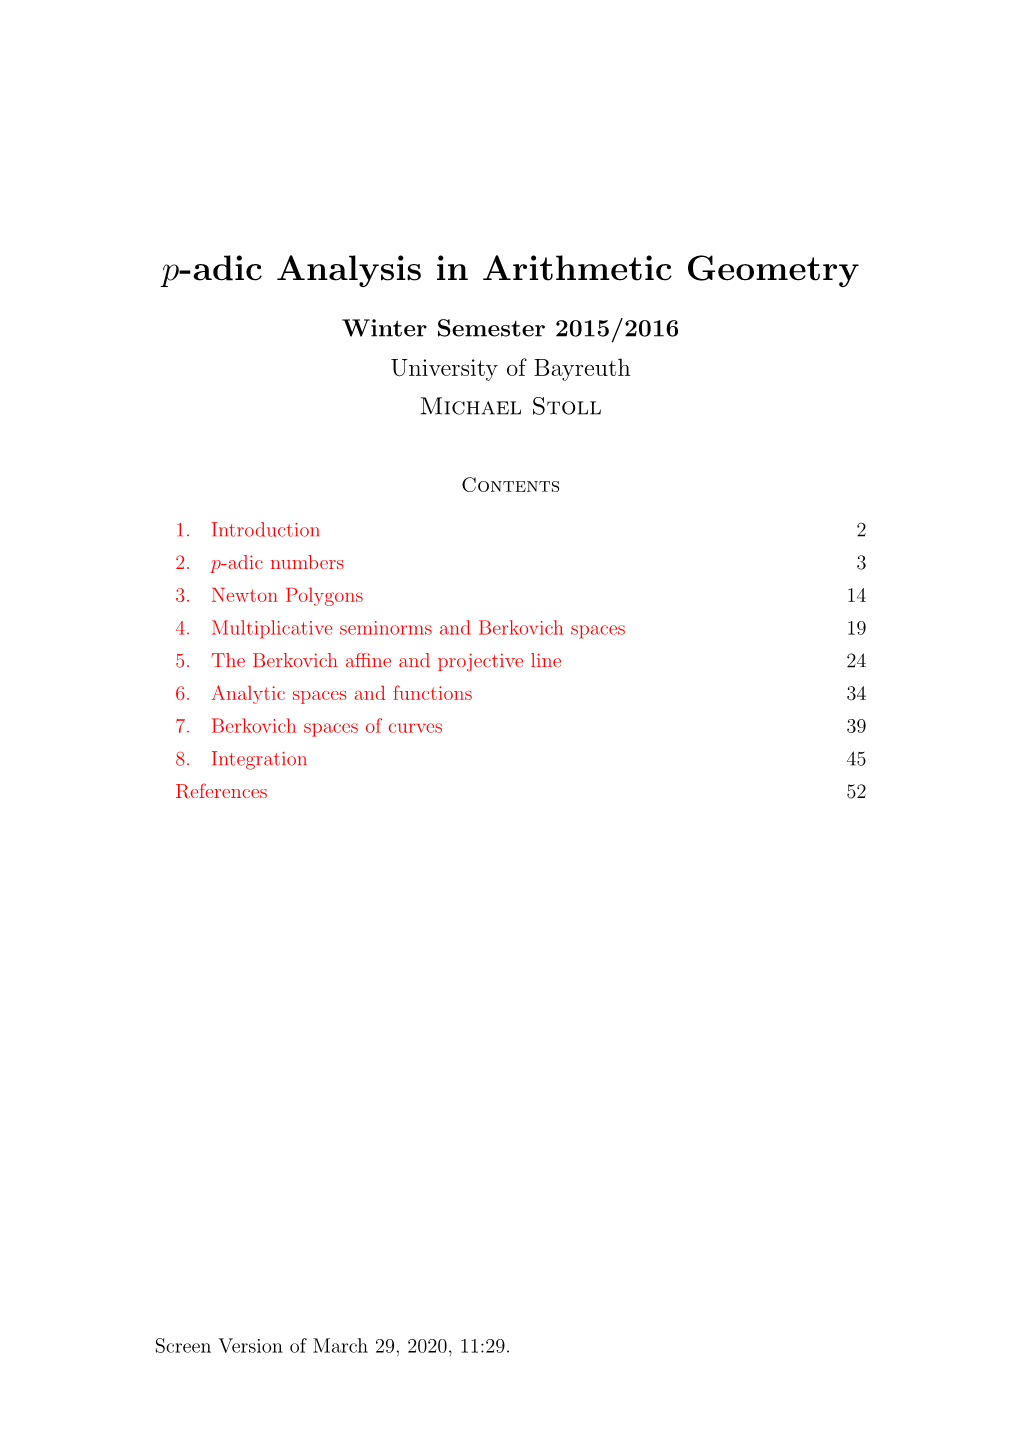 P-Adic Analysis in Arithmetic Geometry